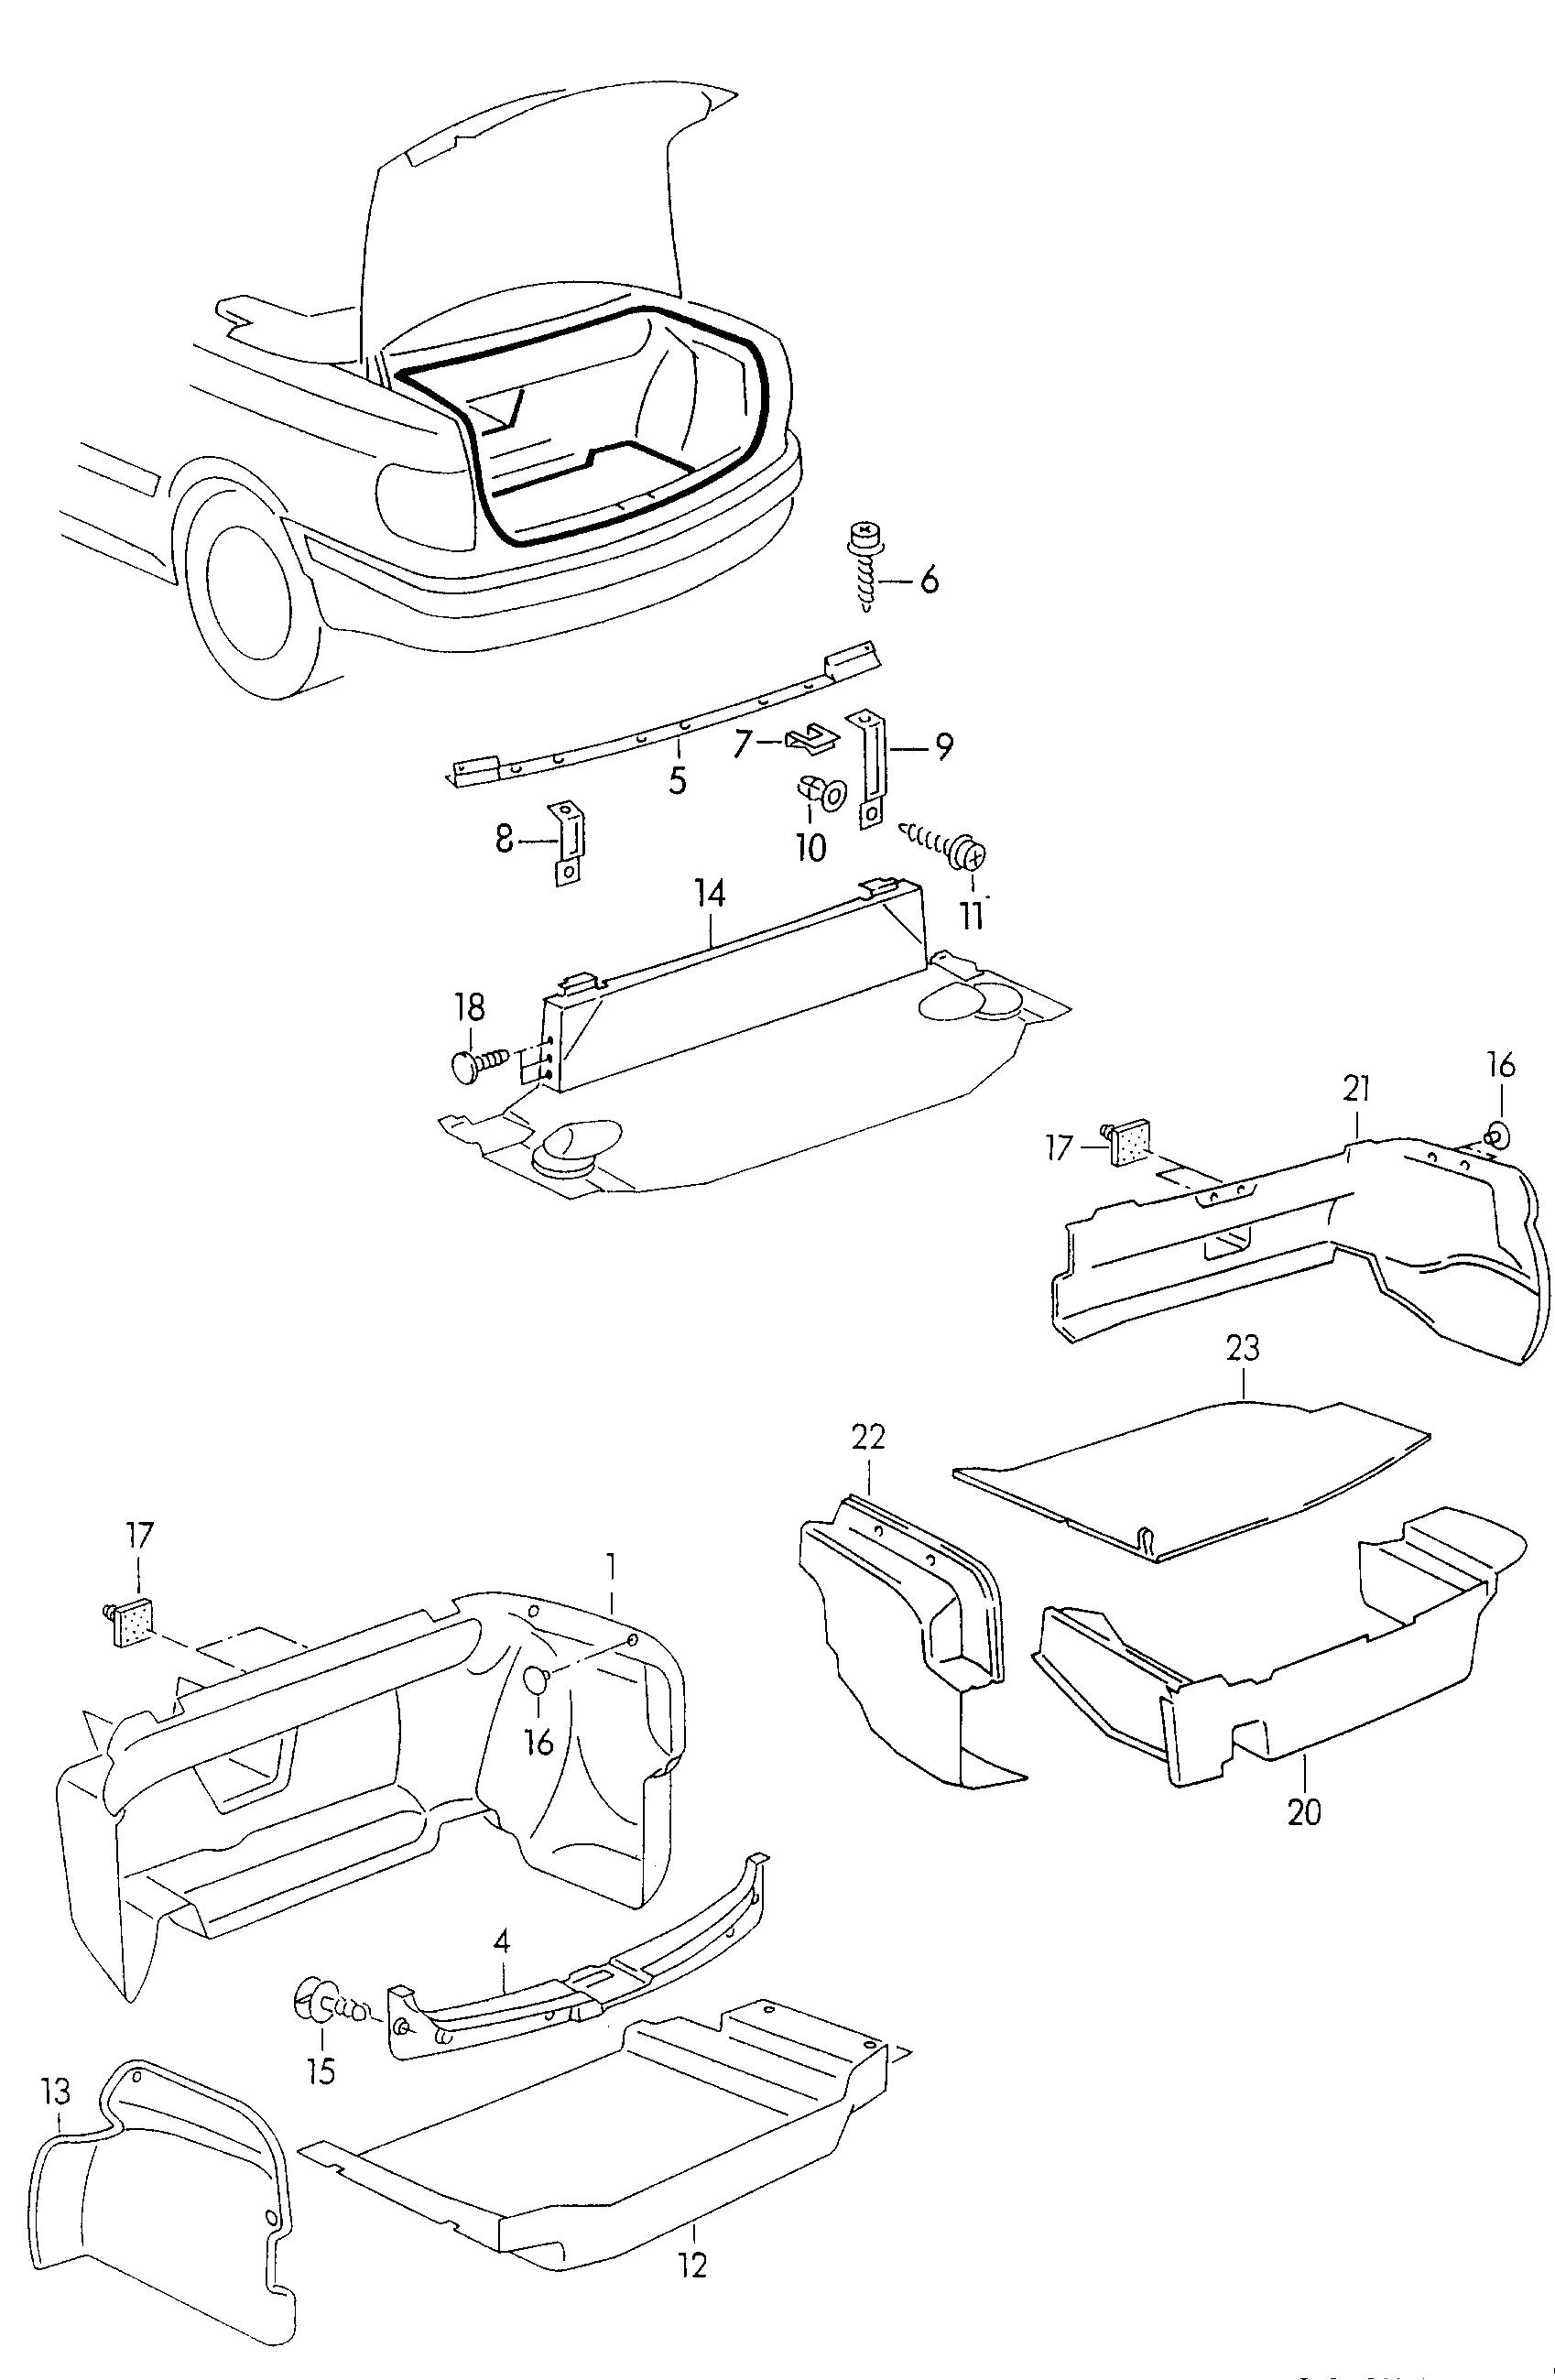 Kofferraumverkleidung; Verdeckkasten - Audi Cabriolet(ACA)  